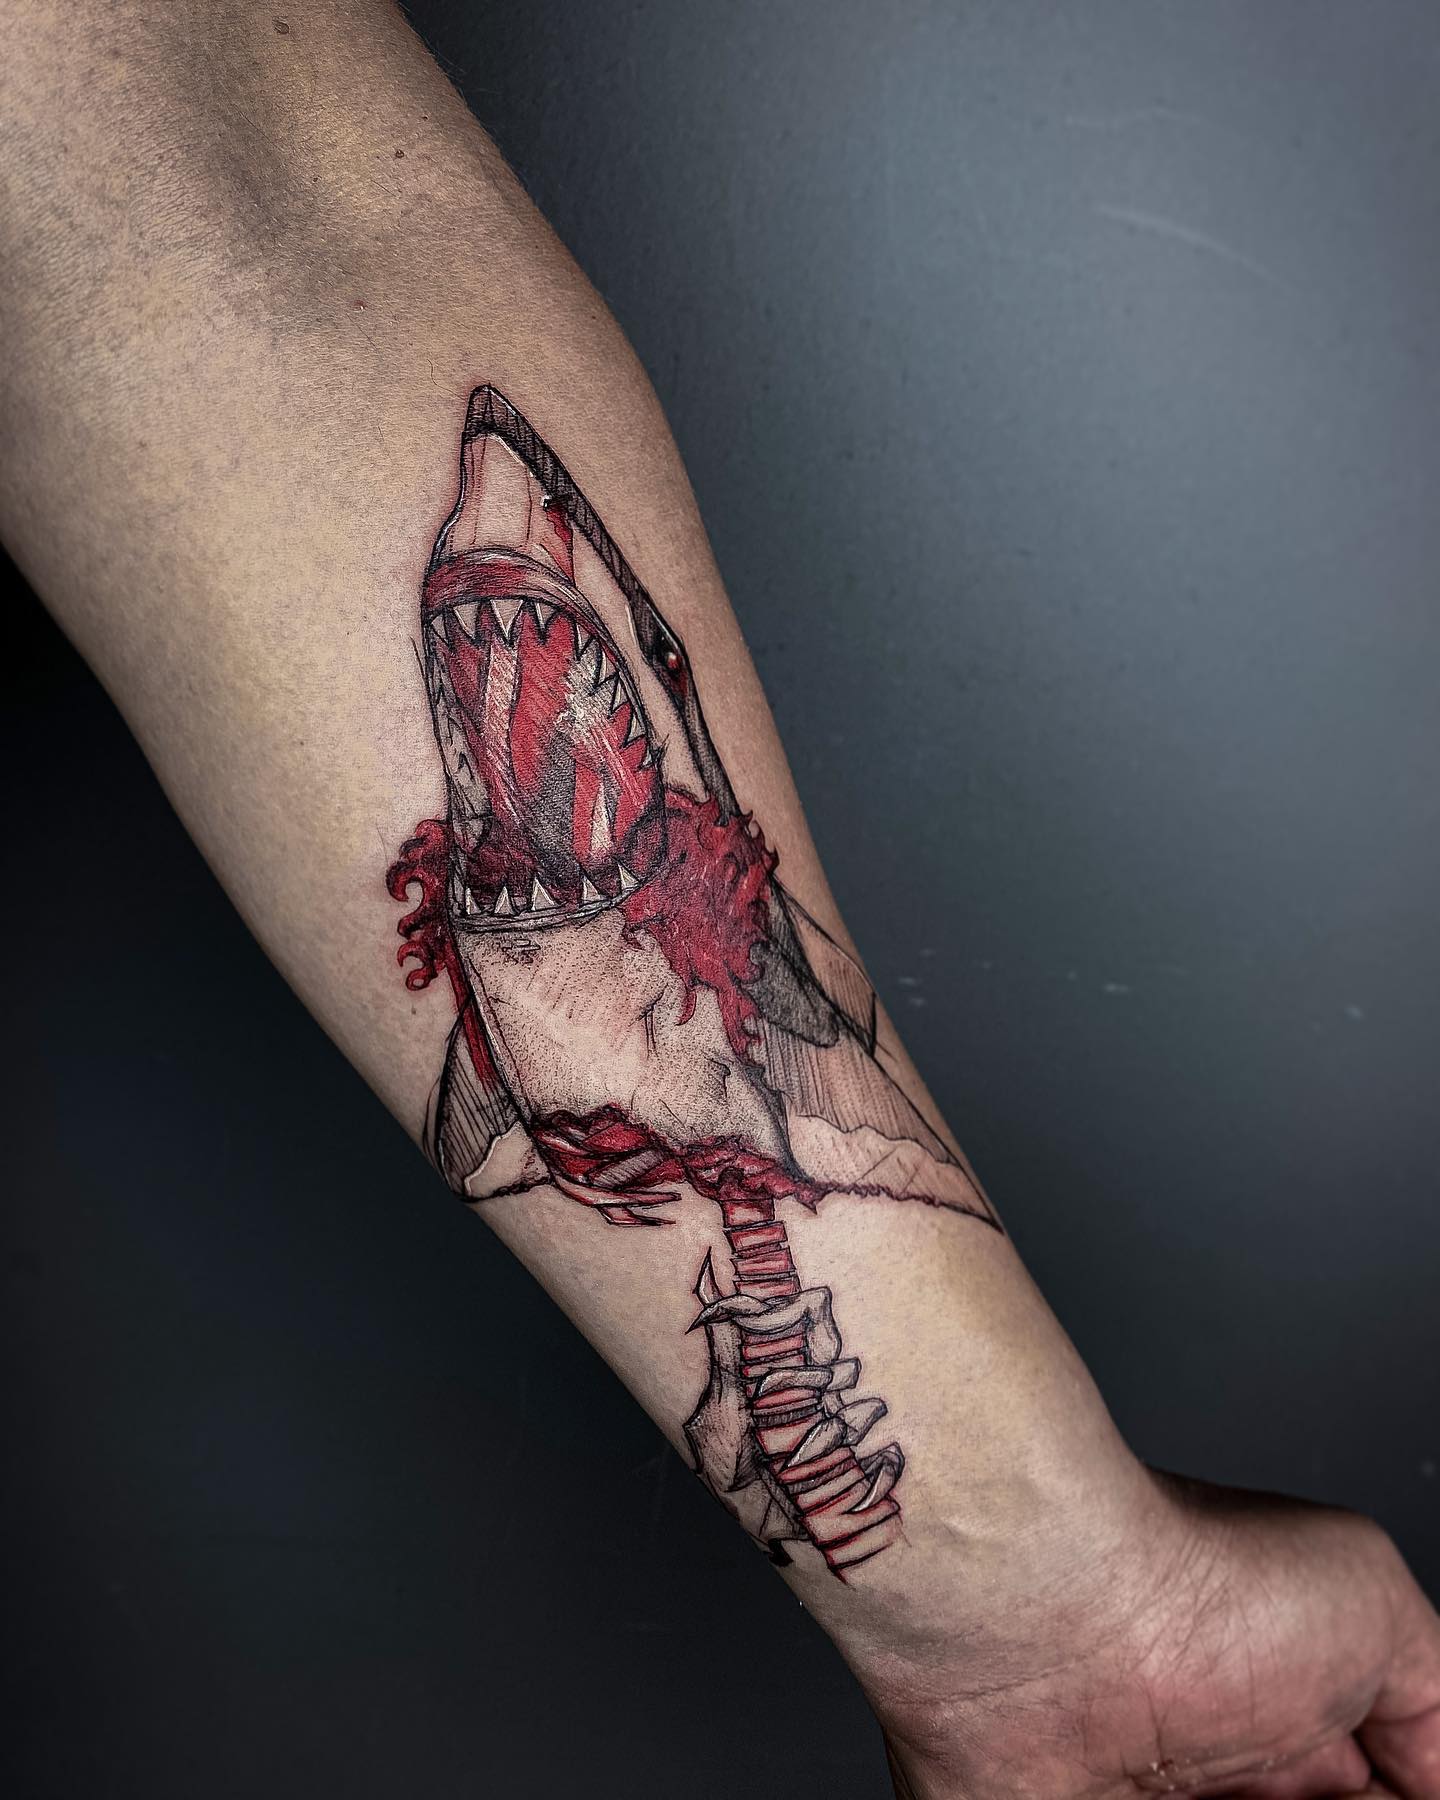 Genial idea de tatuaje de tiburón.